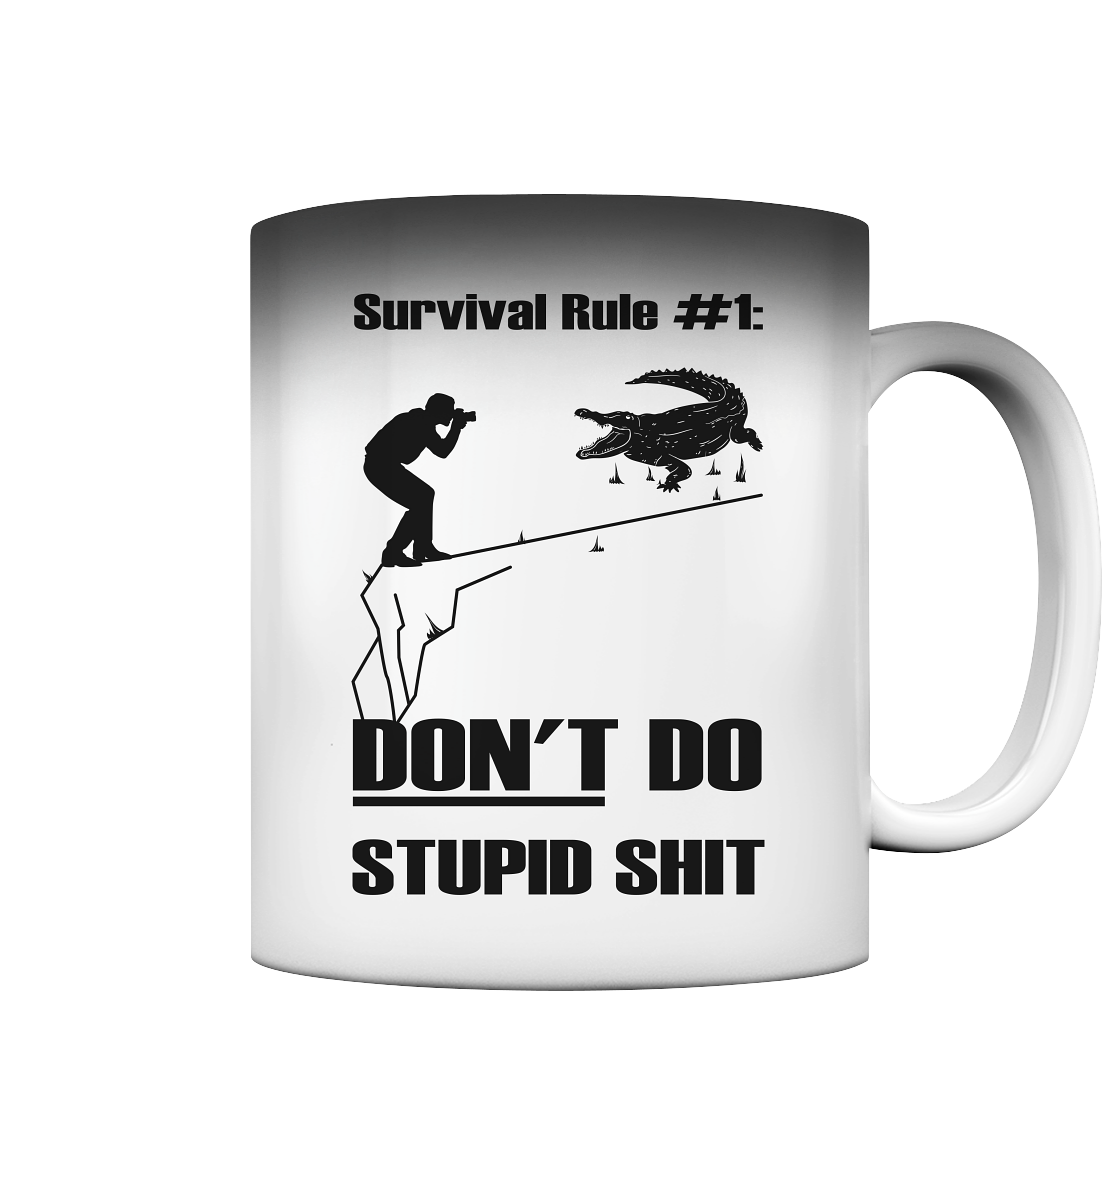 Don't do stupid shit - Magic Mug